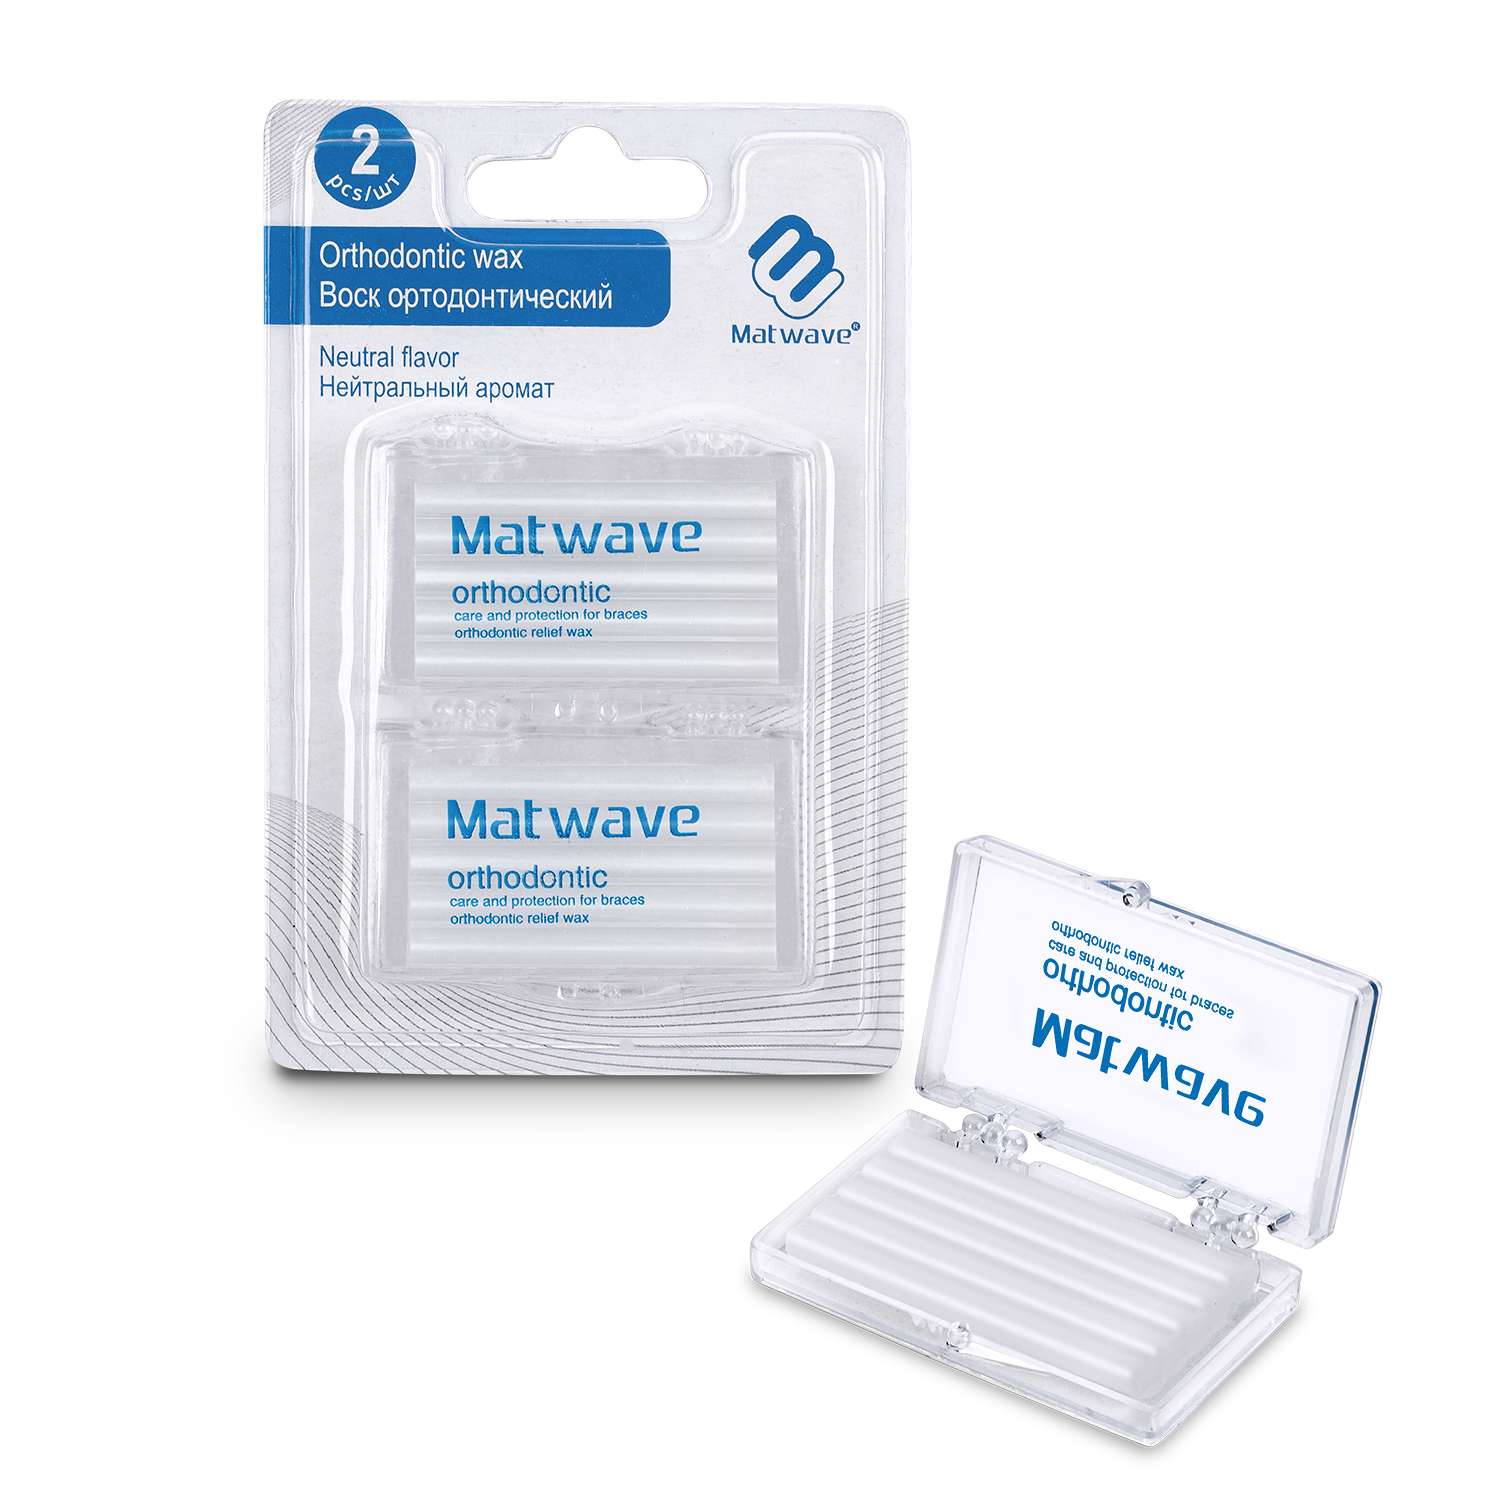 Воск для брекетов для детей Matwave ортодонтический нейтральный аромат 2 шт - фото 6